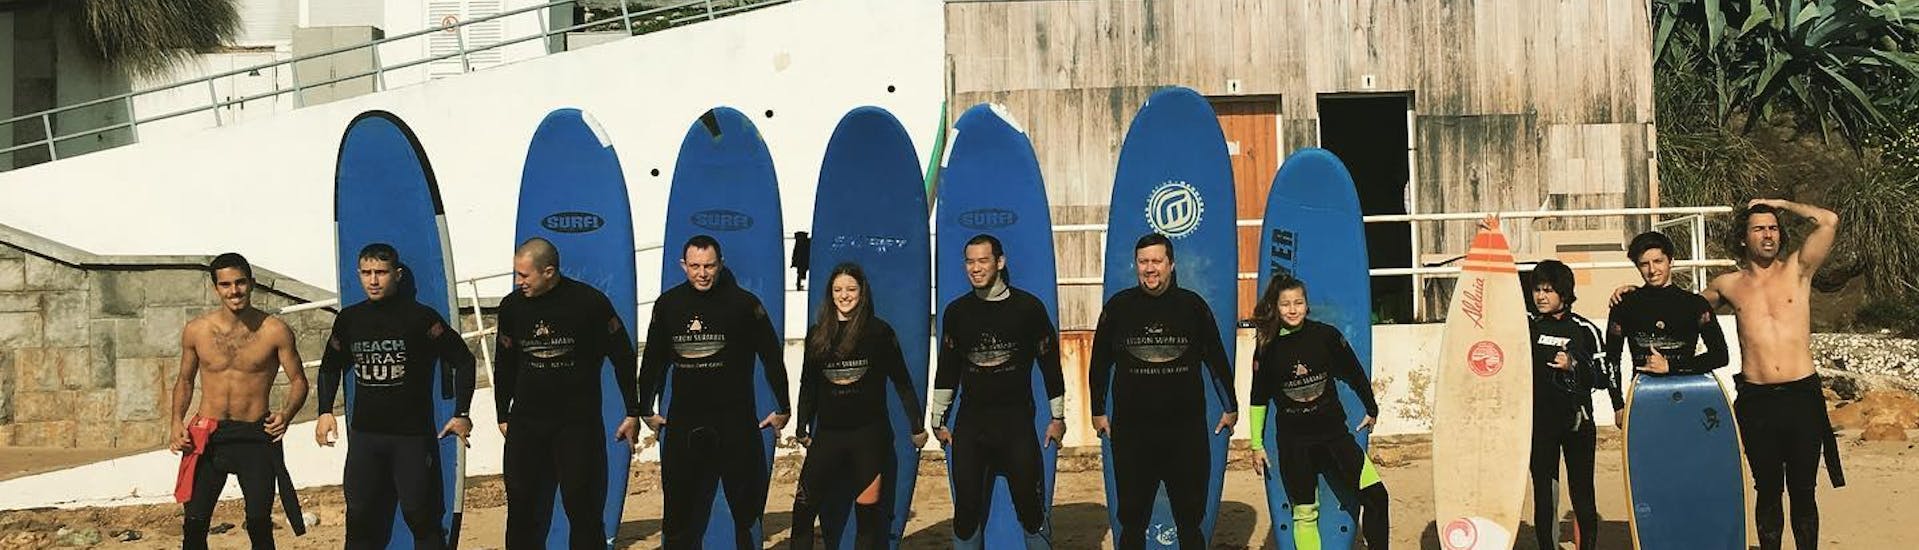 Un grupo de aspirantes a surfistas posa para una foto junto a sus instructores de surf de Lisbon Surfaris antes de empezar sus clases de surf en la playa de Carcavelos, cerca de Lisboa.